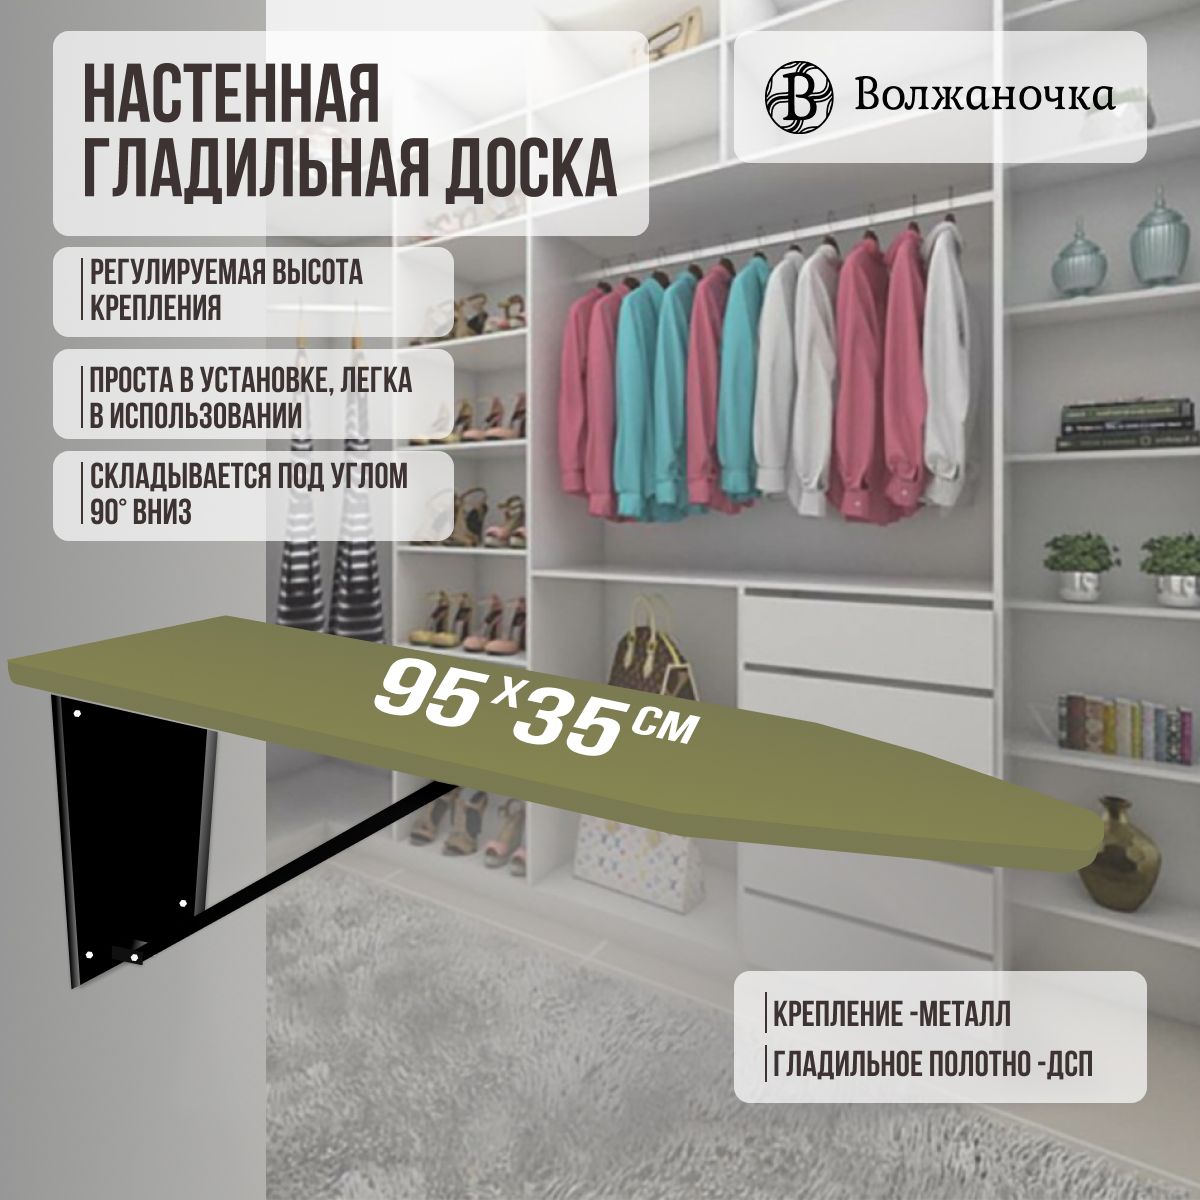 Встраиваемые гладильные доски в Москве (27 товаров)